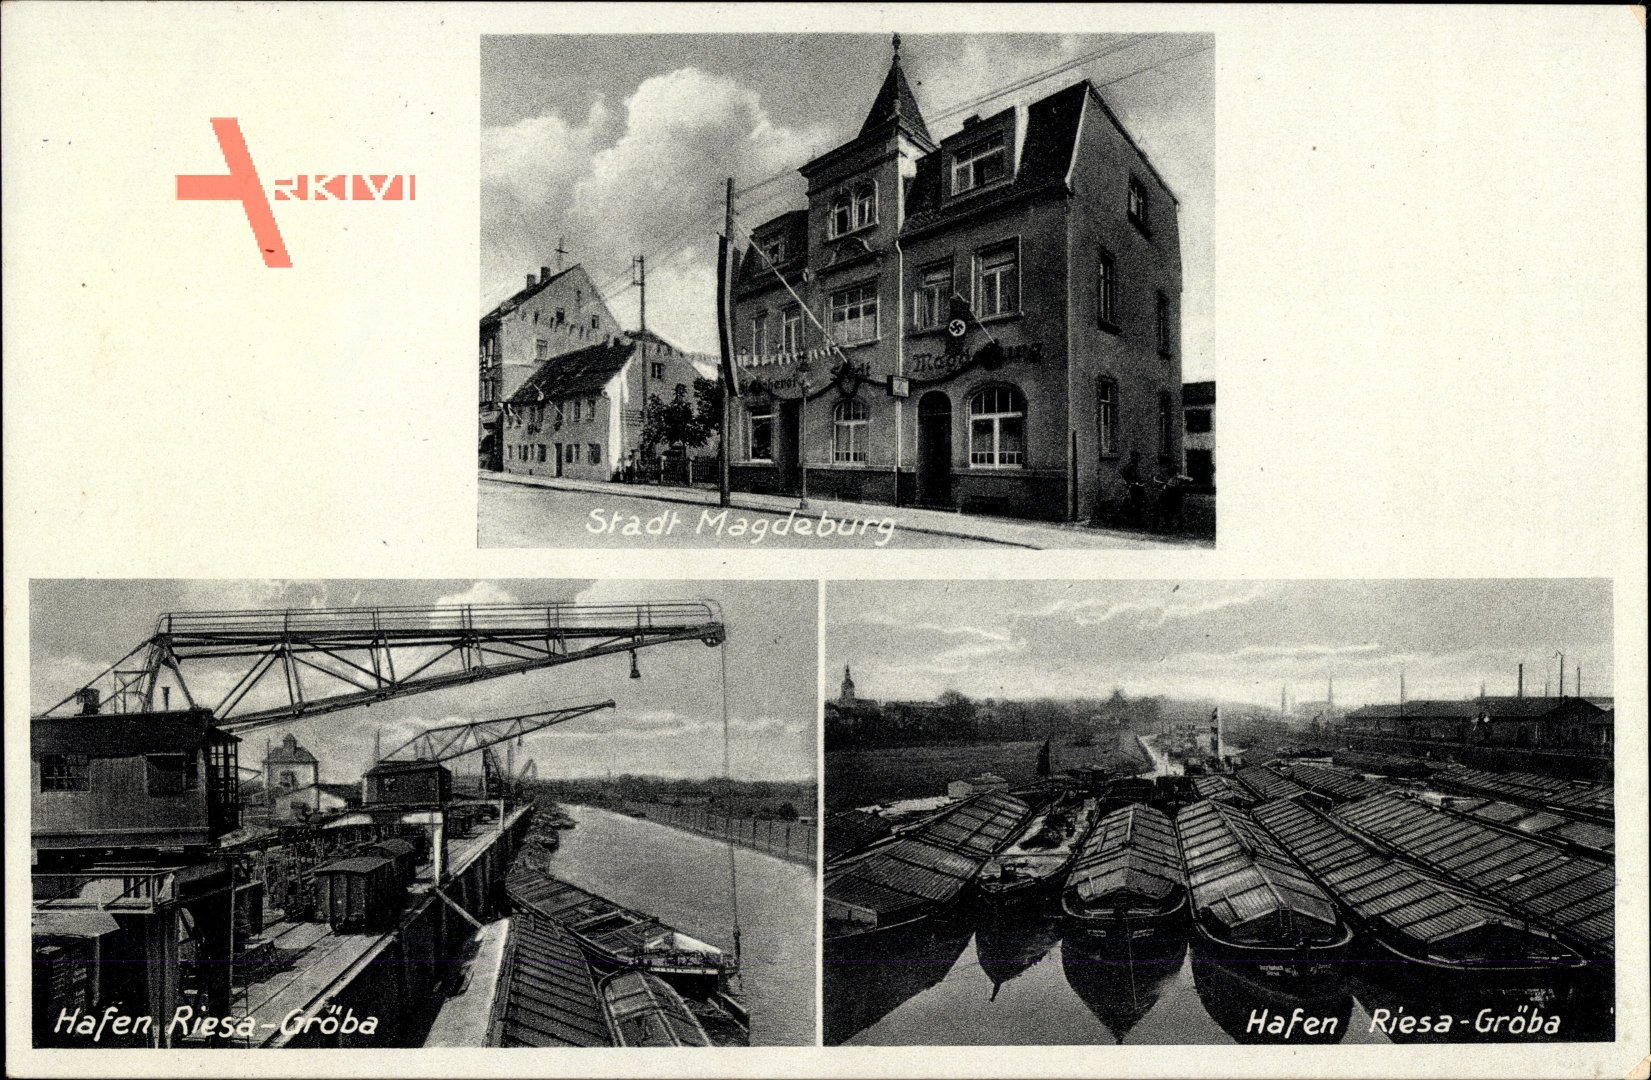 Gröba Riesa an der Elbe, Fleischerei Stadt Magdeburg, Georg Schunack, Hafenpartie